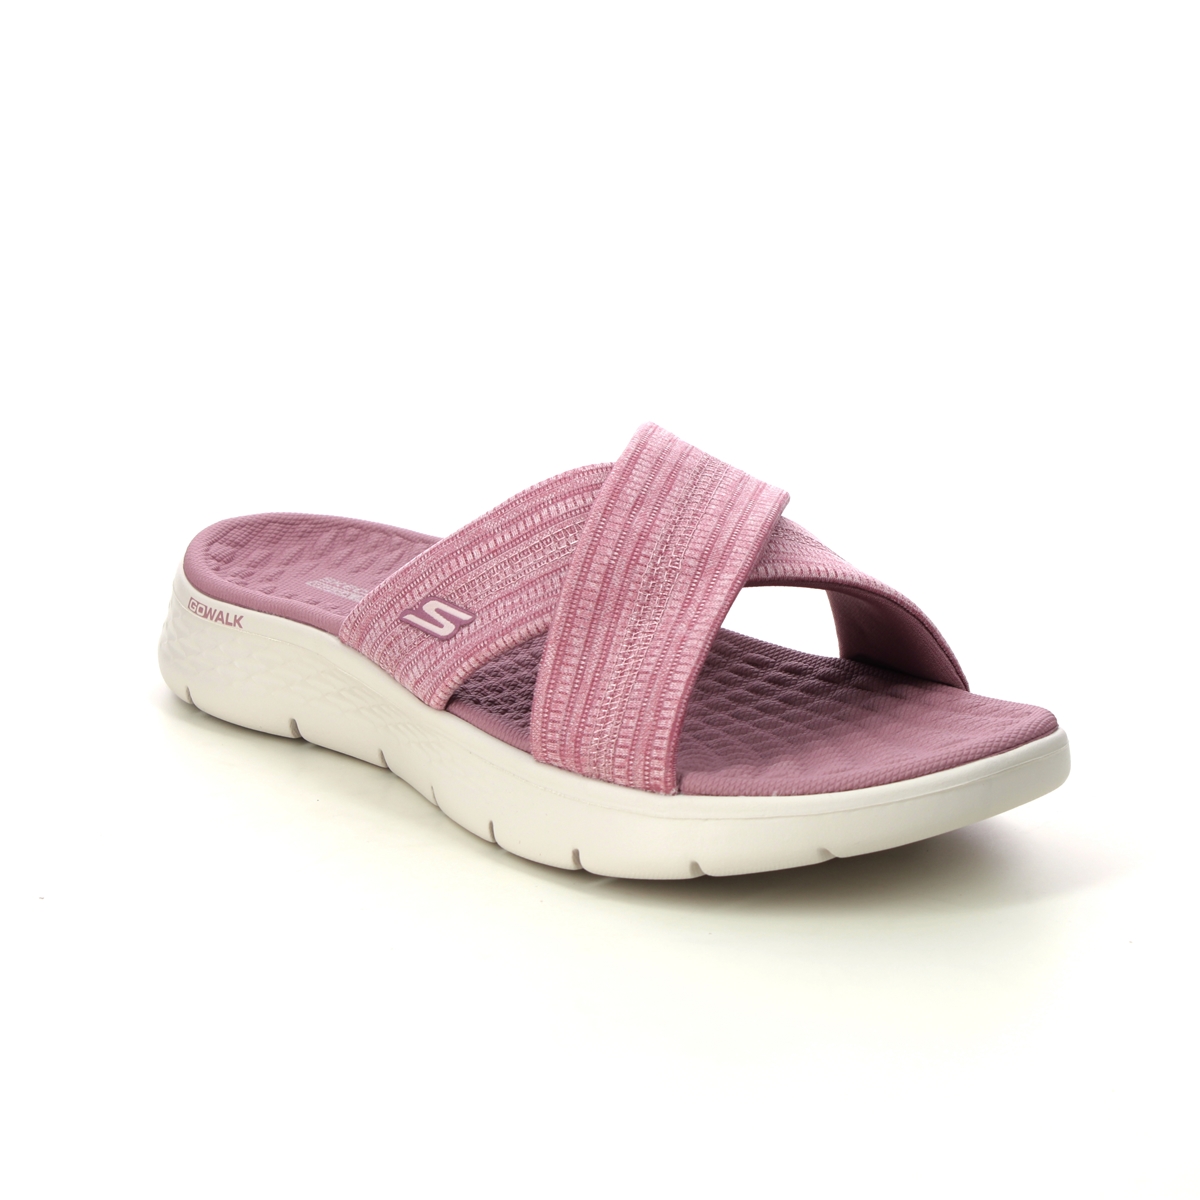 Skechers Go Walk Flex Sandal MVE Mauve Womens Slide Sandals 141420 in a Plain Textile in Size 7